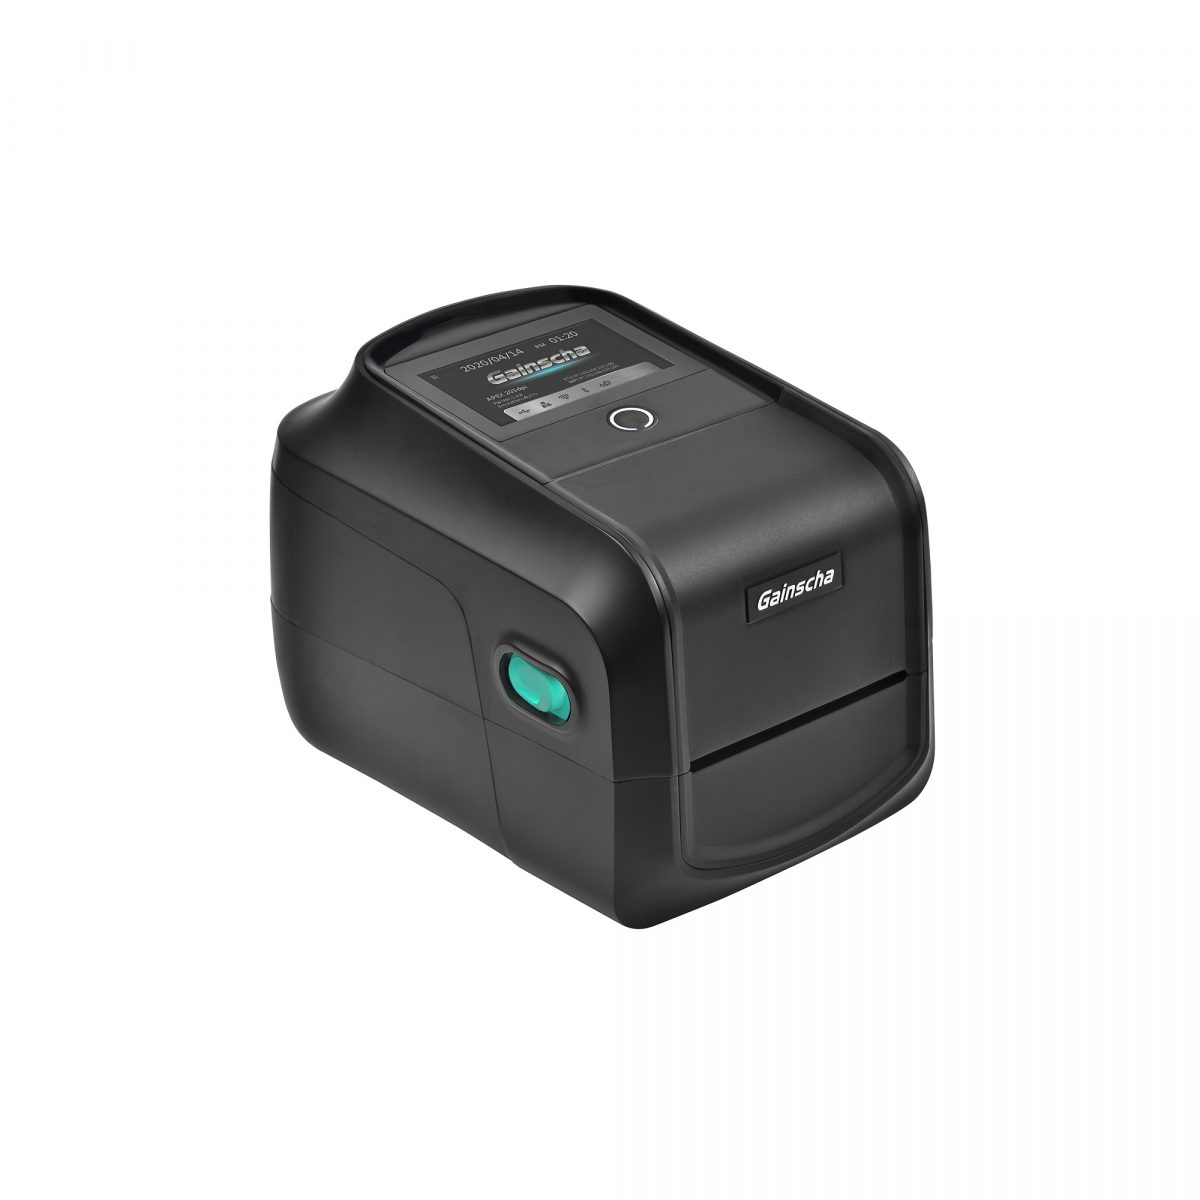 ga-2408t 4 inch desktop barcode printer (empower)